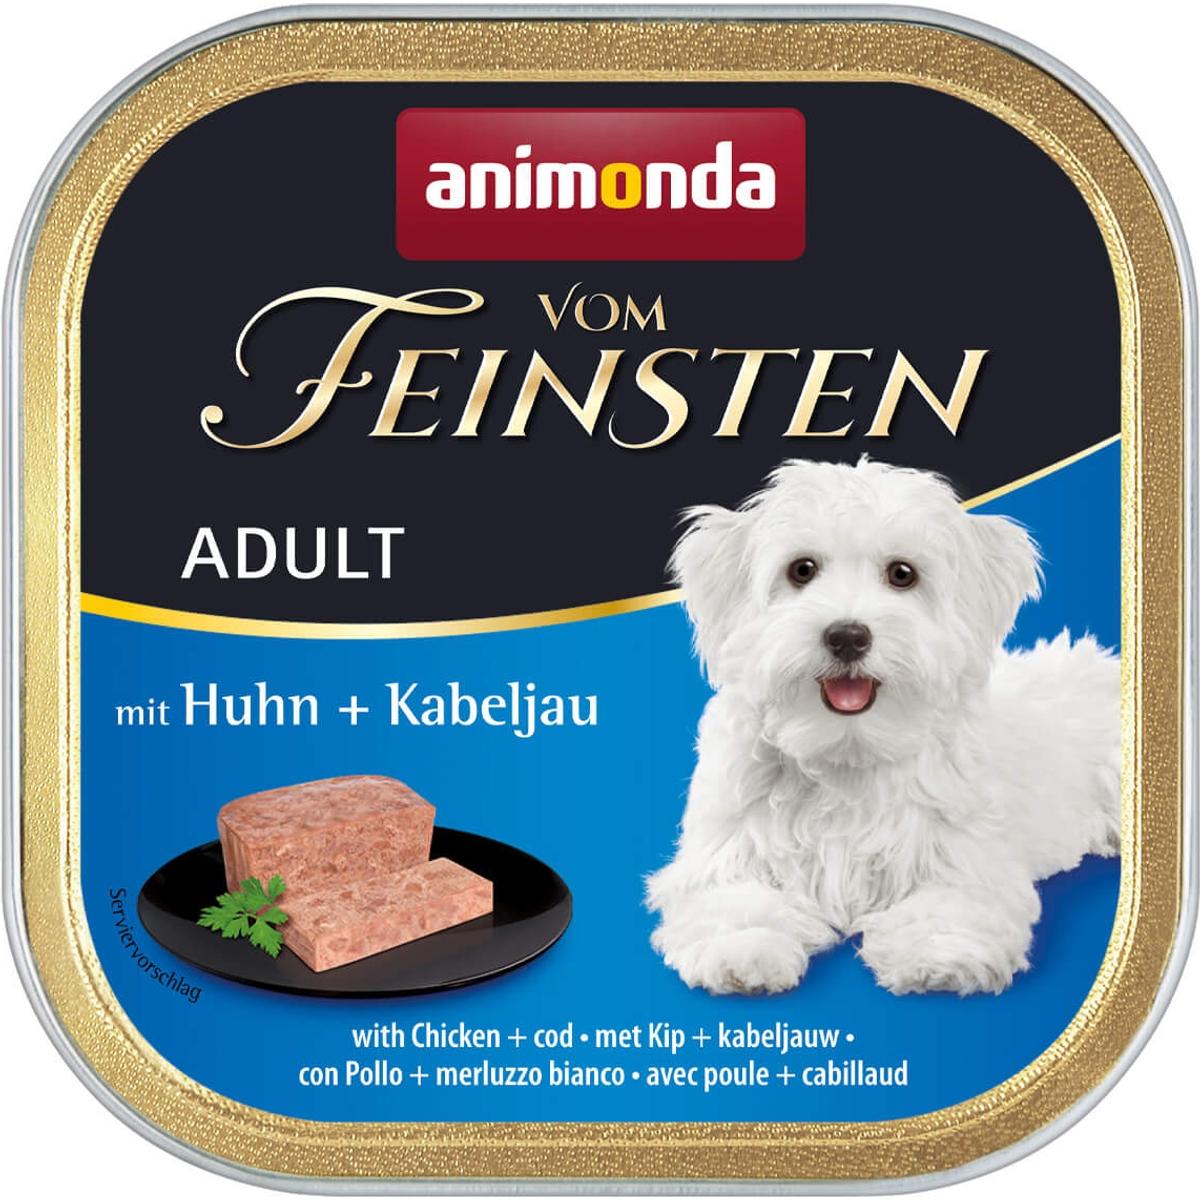 ANIMONDA Kompletna mokra hrana za odrasle pse, Sa živinom i bakalarom, 1-6 godina starosti, 150 g